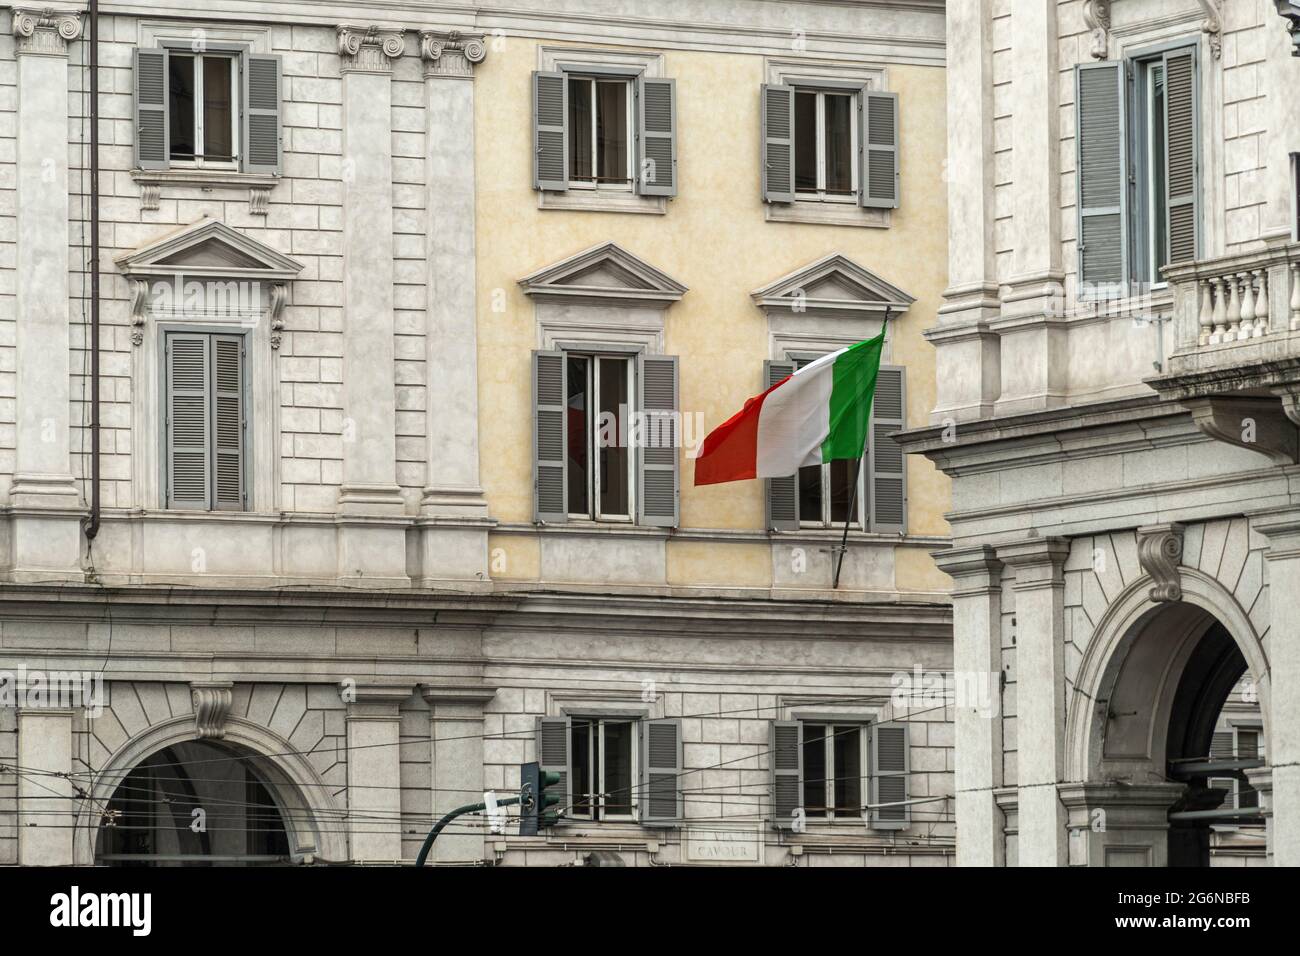 La bandera italiana revolotea entre los palacios de la Piazza dei Cinquecento en Roma. Roma, Lazio, Italia, Europa Foto de stock